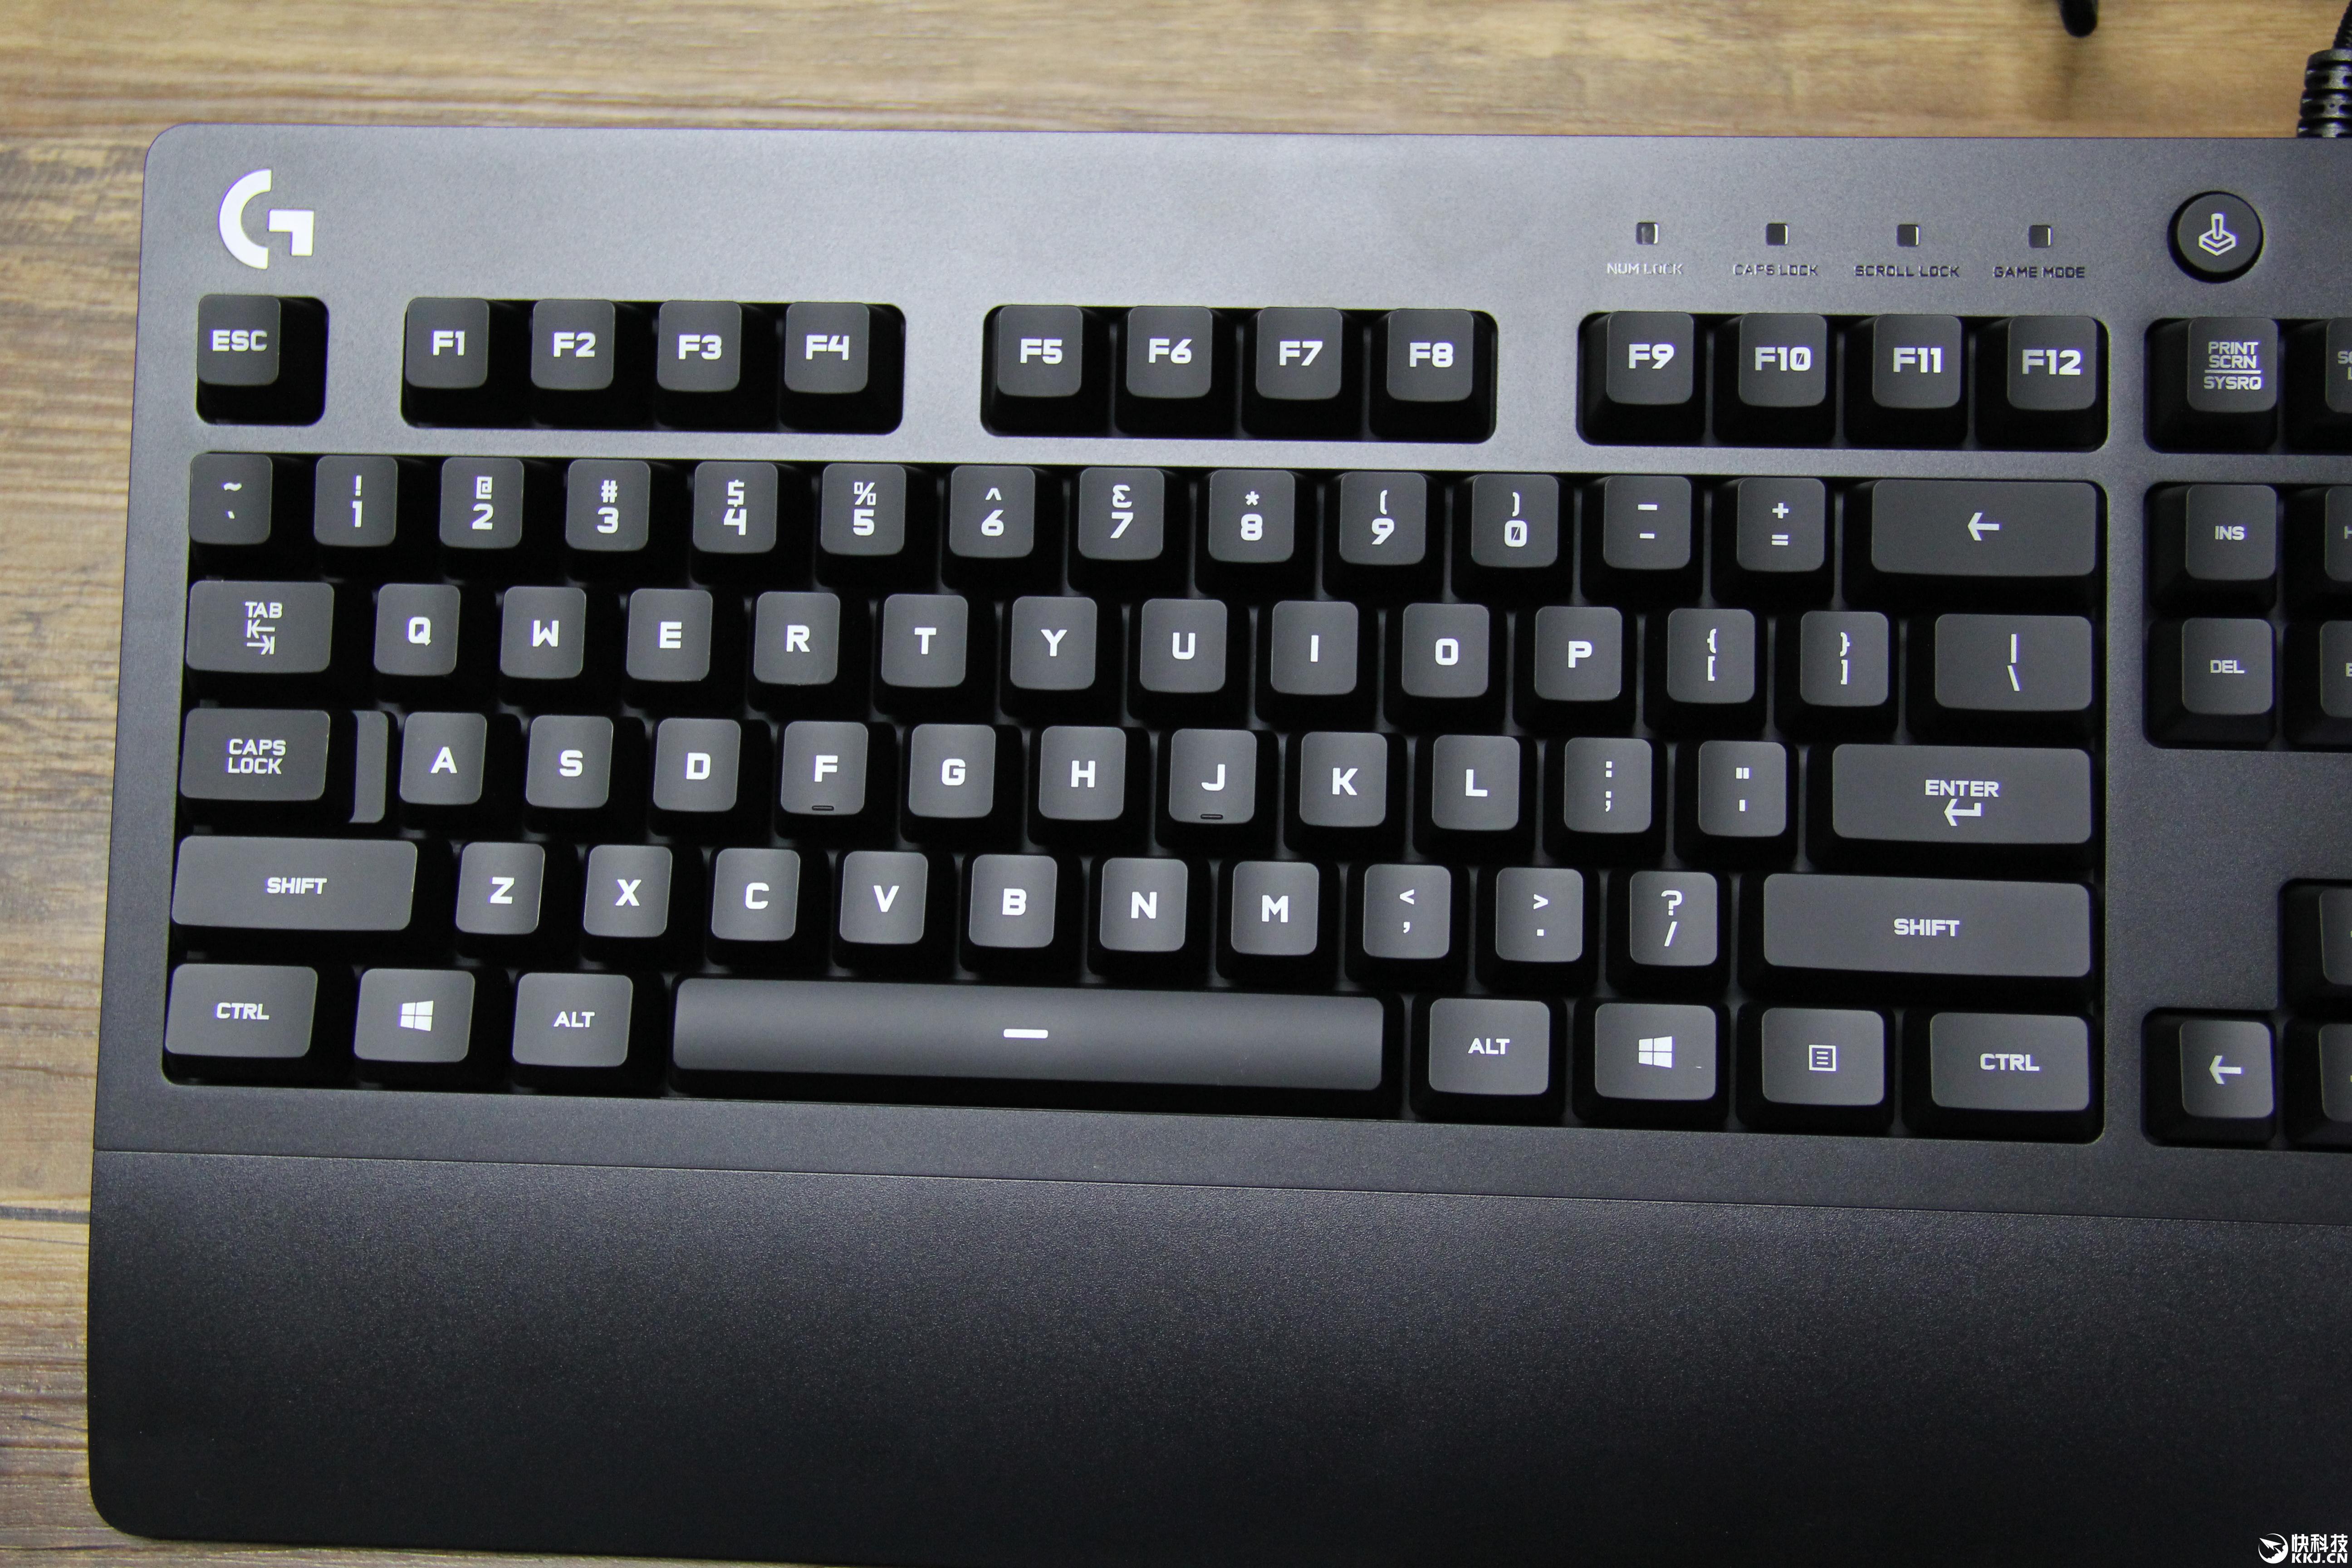 键位设计上,由于罗技g2配备了独立的媒体,音量控制键,整个键盘